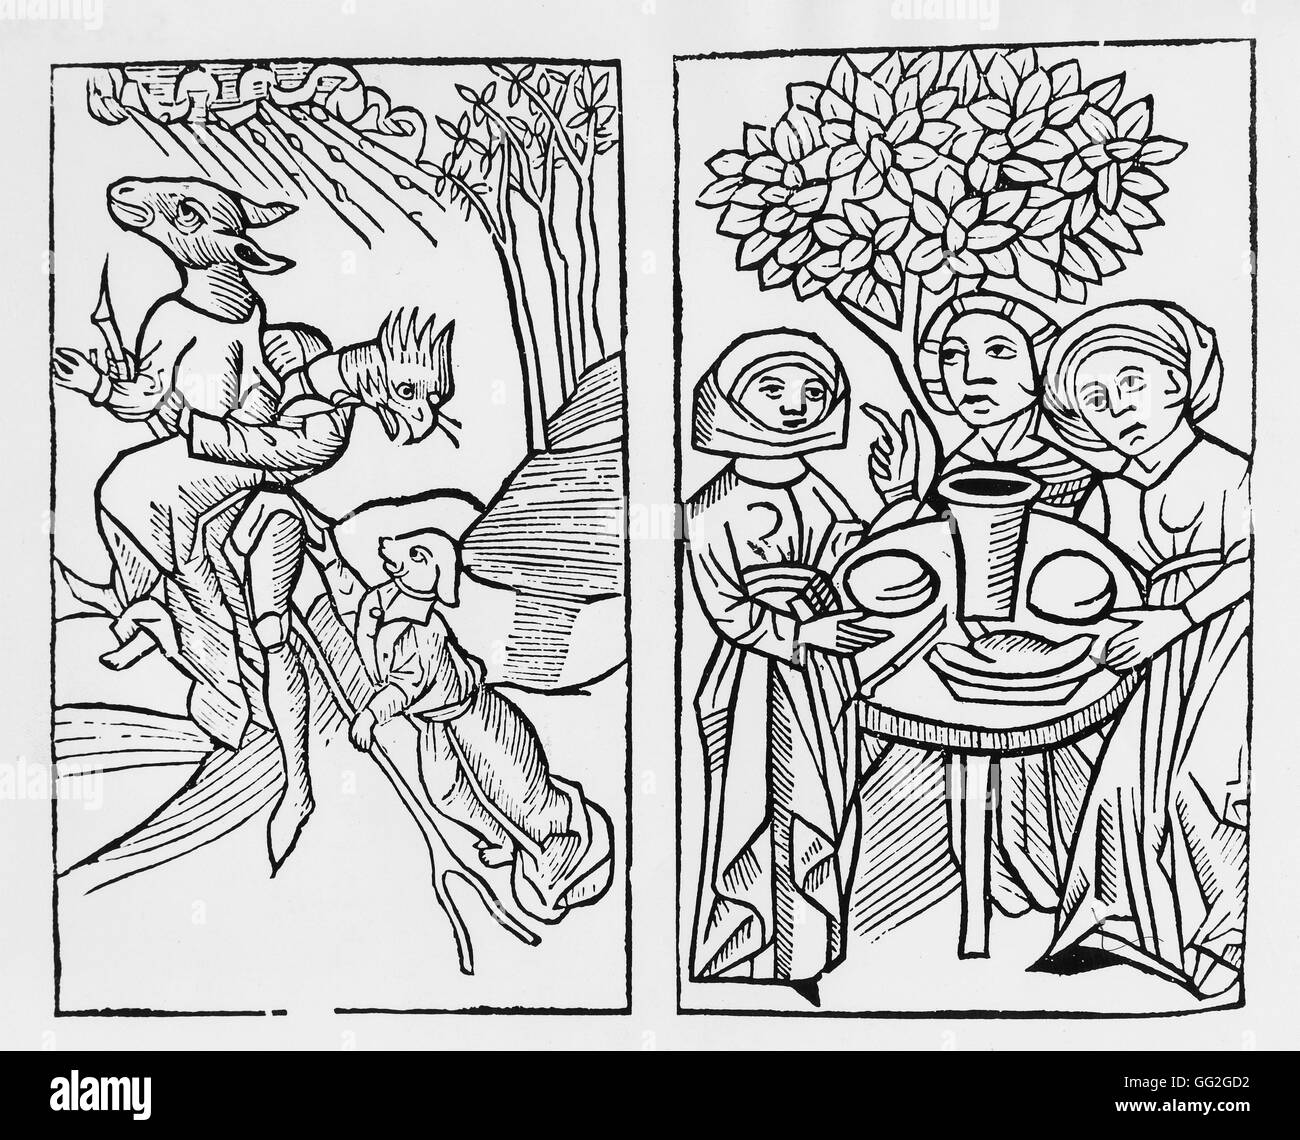 Les sorcières sous la forme d'animaux (à gauche) ; cérémonie du sabbat (droite). Xylographie médiévale. 16ème siècle gravure sur bois Paris, Bibliothèque Nationale de France Banque D'Images